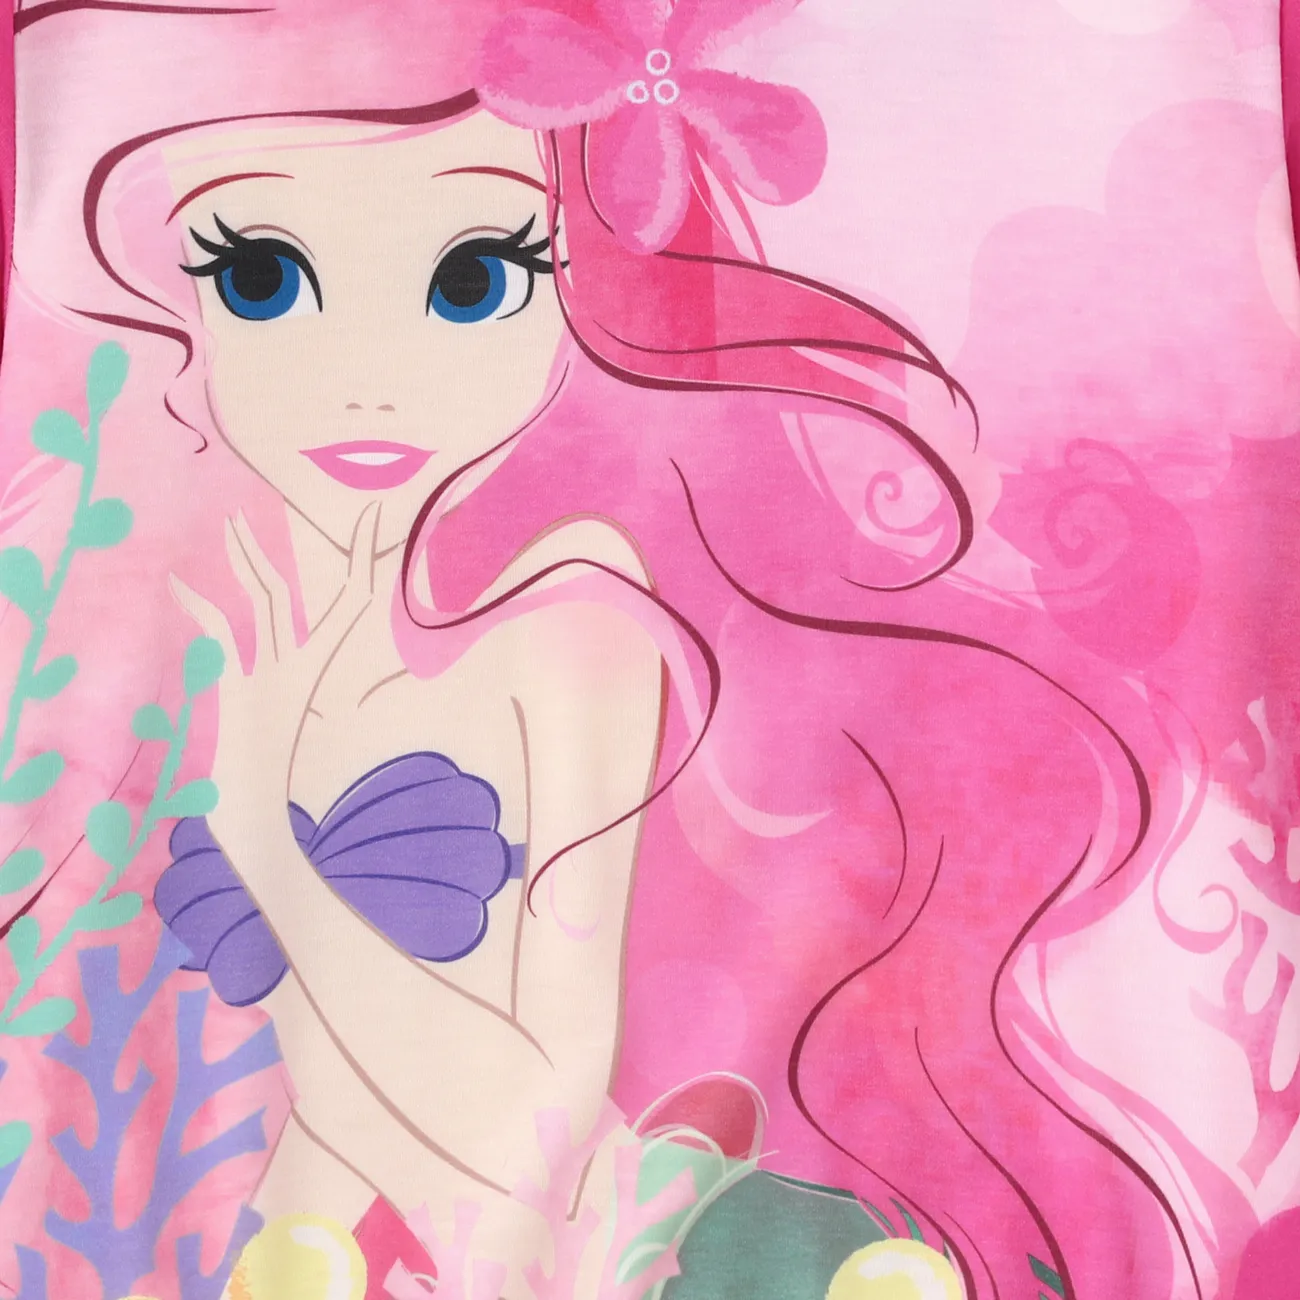 Disney Princess Toddler Girl Naia™ Character Print Long-sleeve Pullover  pink- big image 1